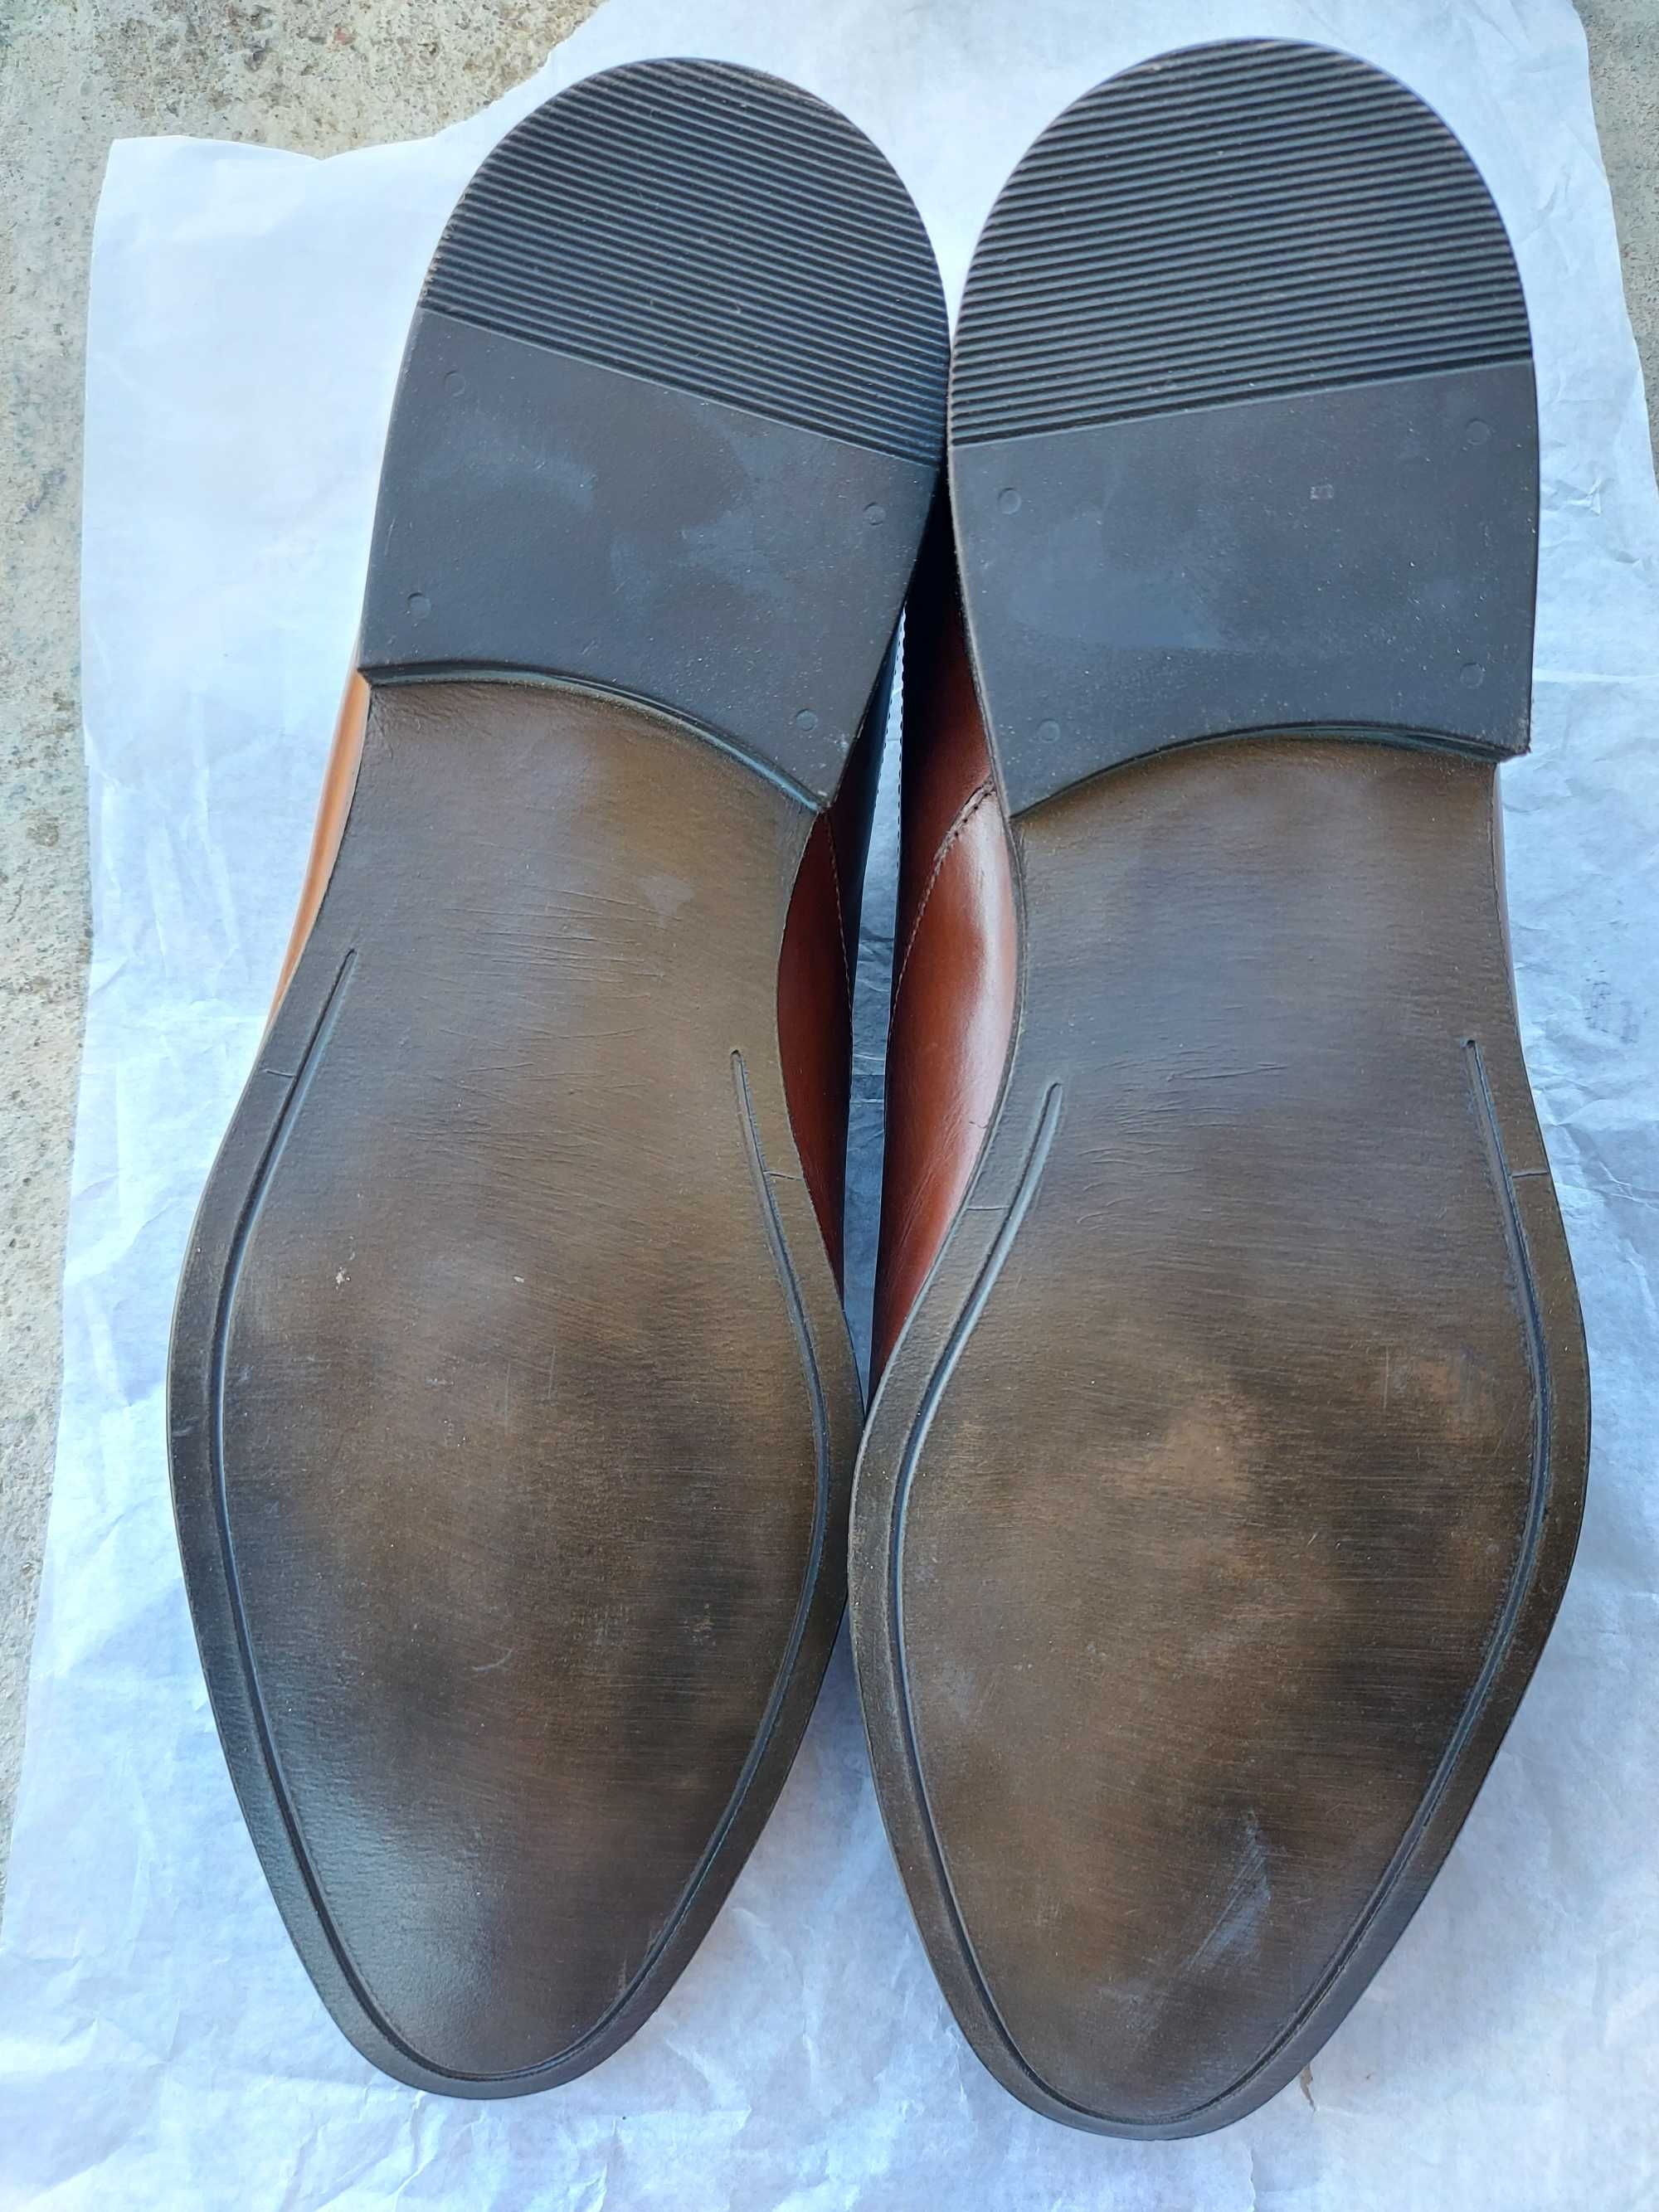 Продам туфли коричневого цвета европейские 43размер или обменяю на 42р